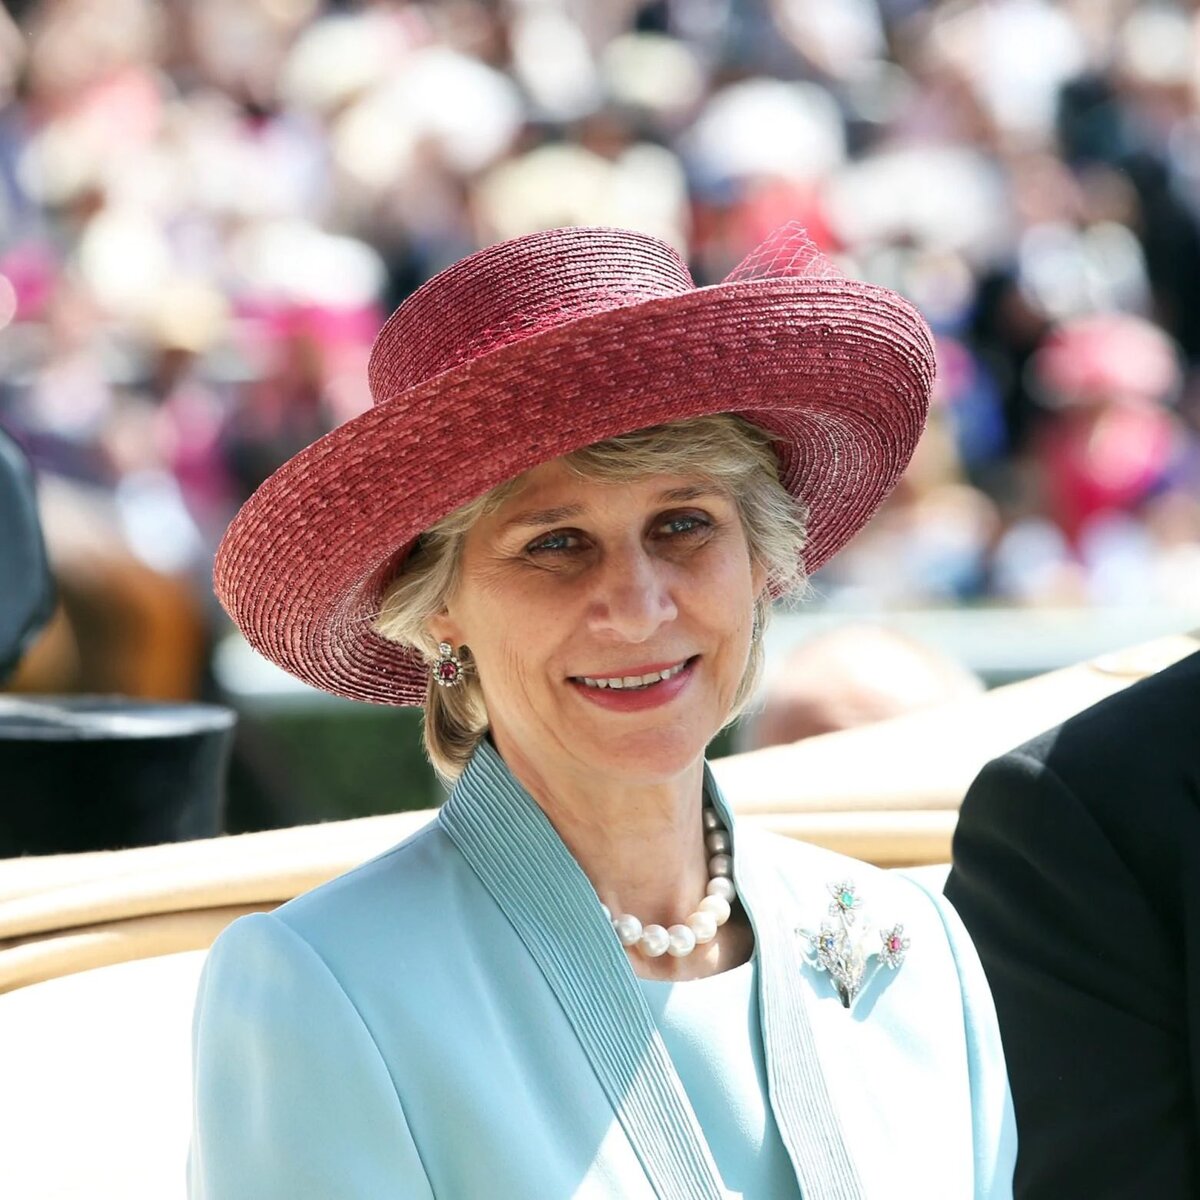 В день святого Георгия, принцесса Уэльская получила уникальную награду от короля в знак признания ее государственной службы. Она была назначена королевской компаньонкой ордена Почетных товарищей.-4